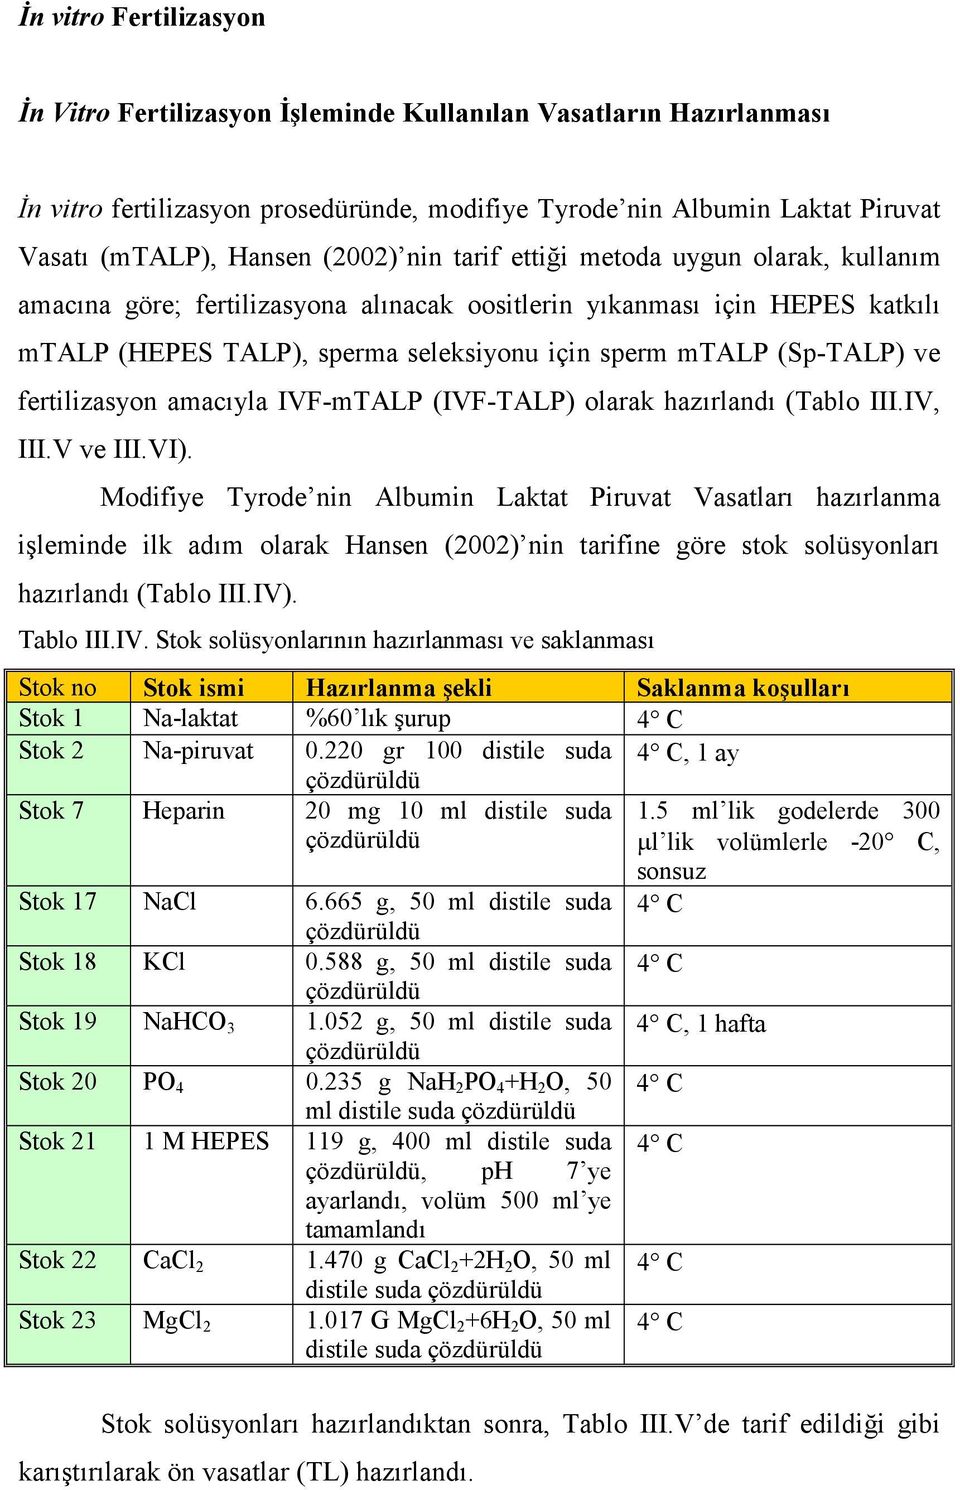 ve fertilizasyon amacıyla IVF-mTALP (IVF-TALP) olarak hazırlandı (Tablo III.IV, III.V ve III.VI).